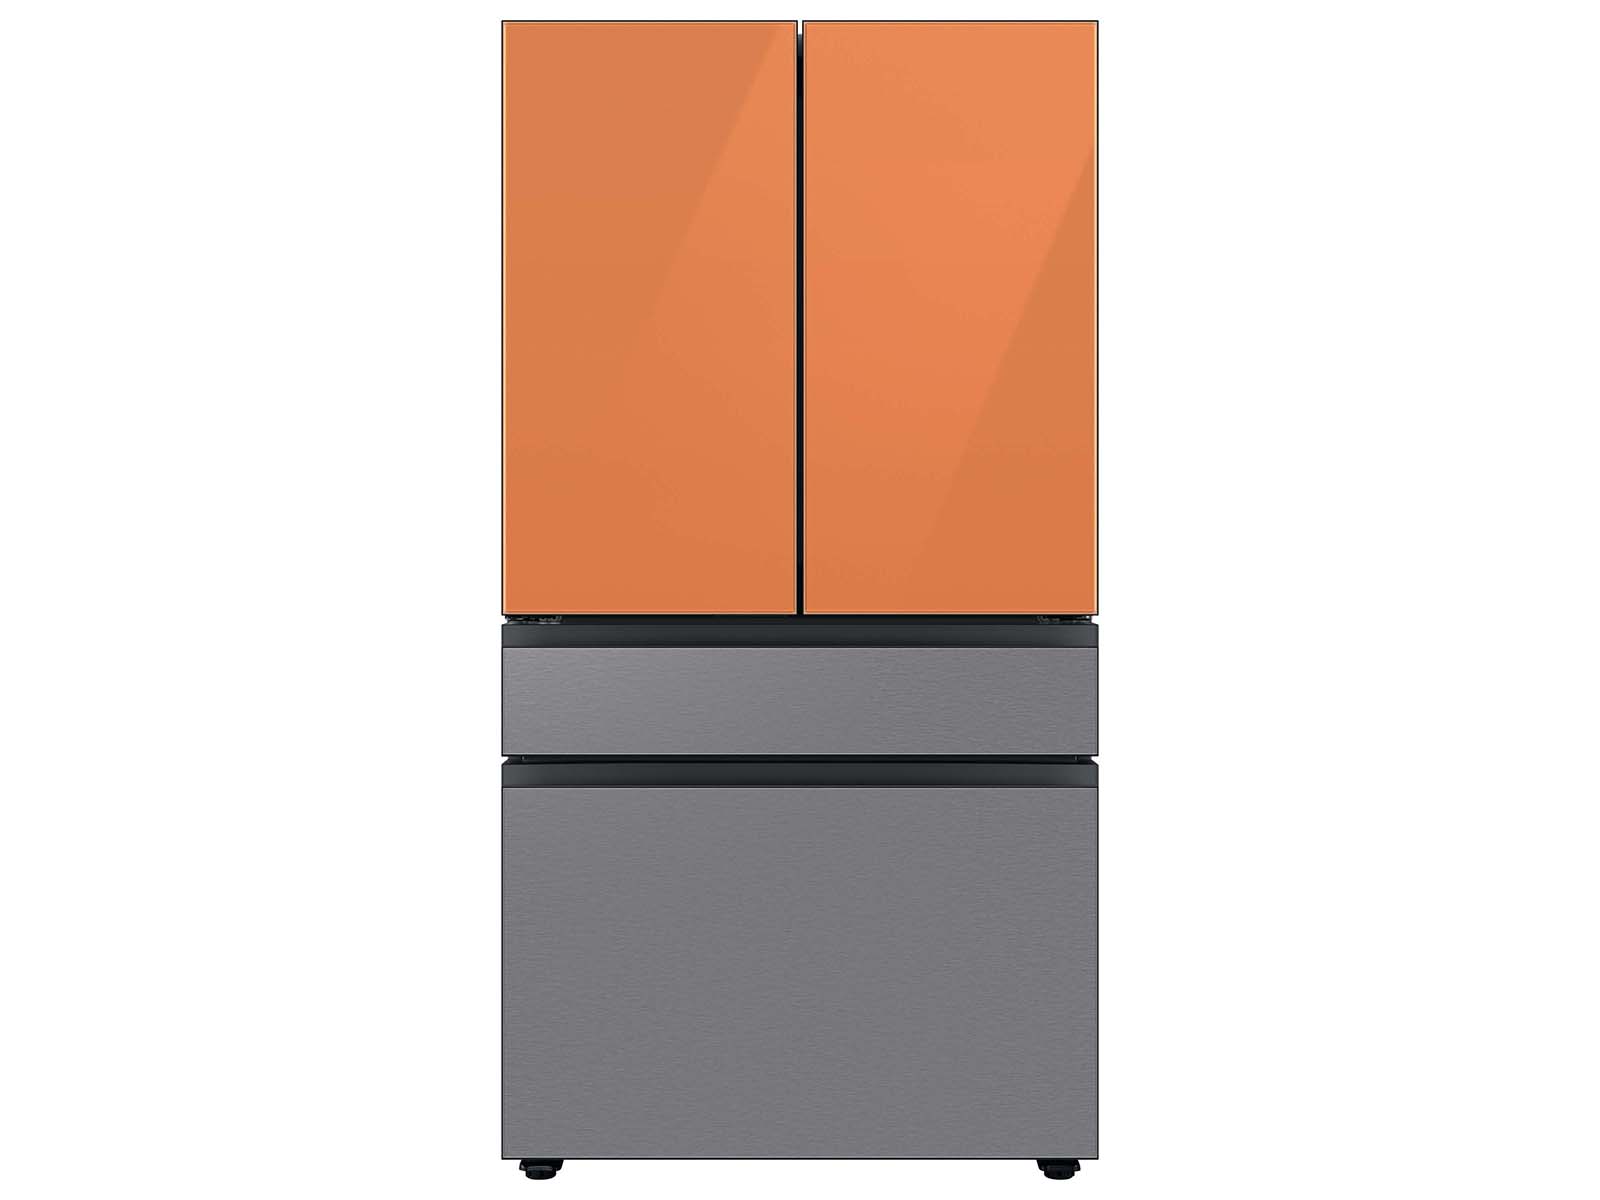 Thumbnail image of Bespoke 4-Door French Door Refrigerator Panel in Clementine Glass - Top Panel